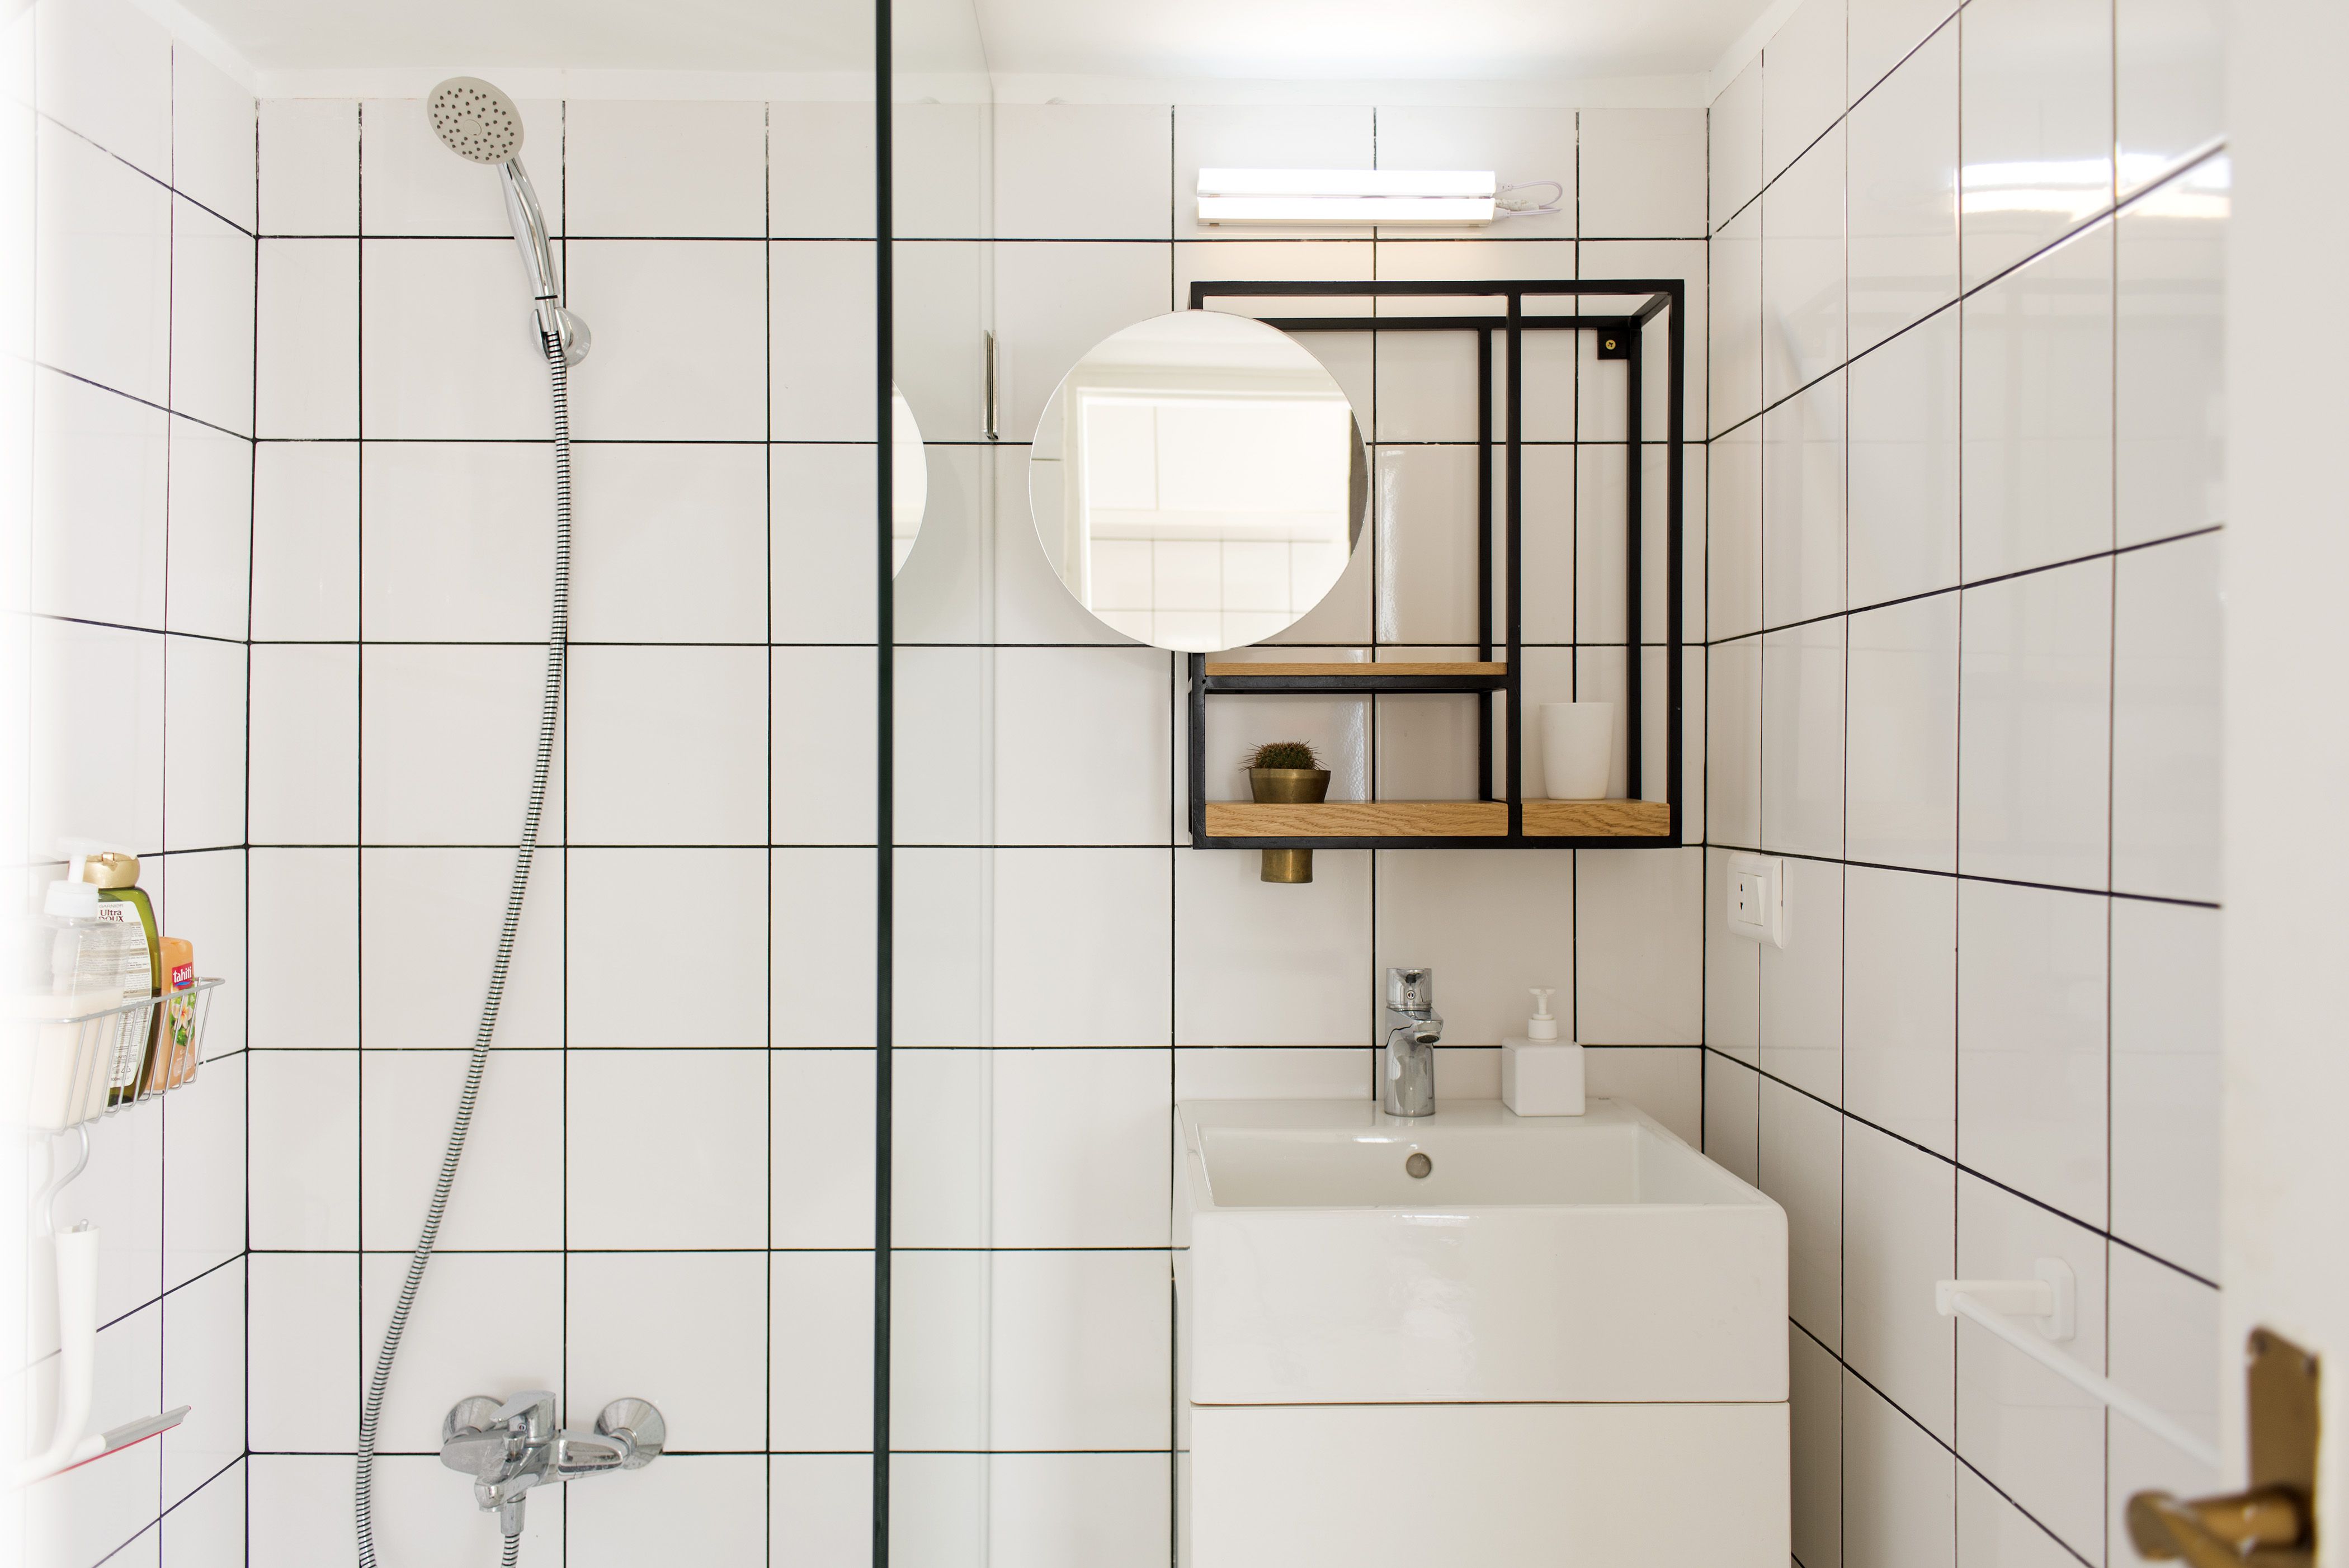 Suradam Tutor Contable 30 cuartos de baño de color blanco con encanto y estilo